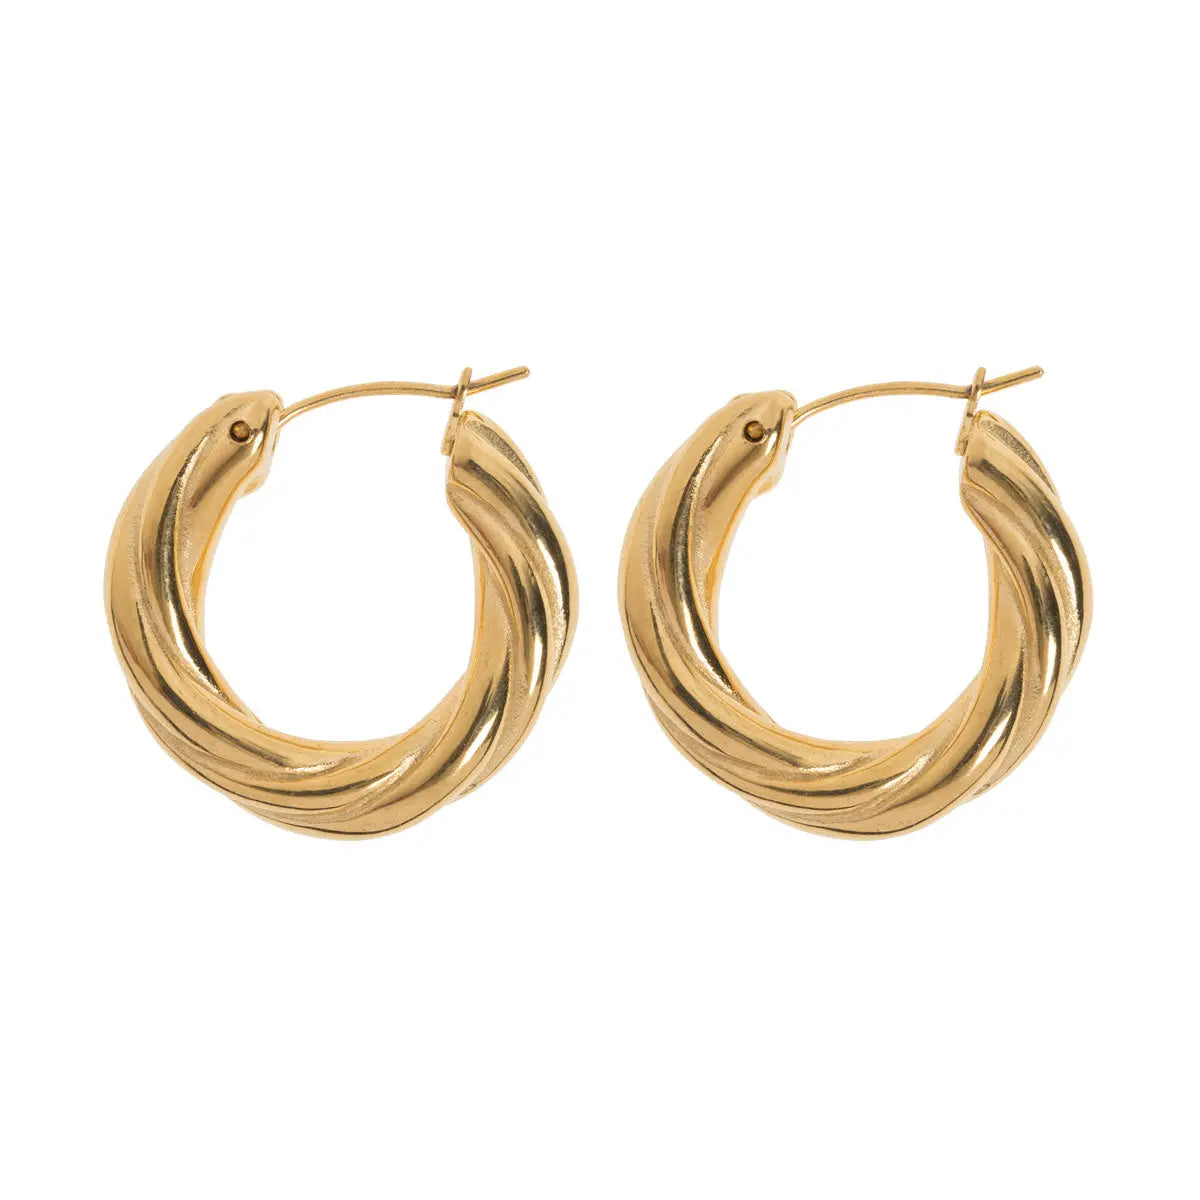 Curved Hoop Earrings | Stainless Steel